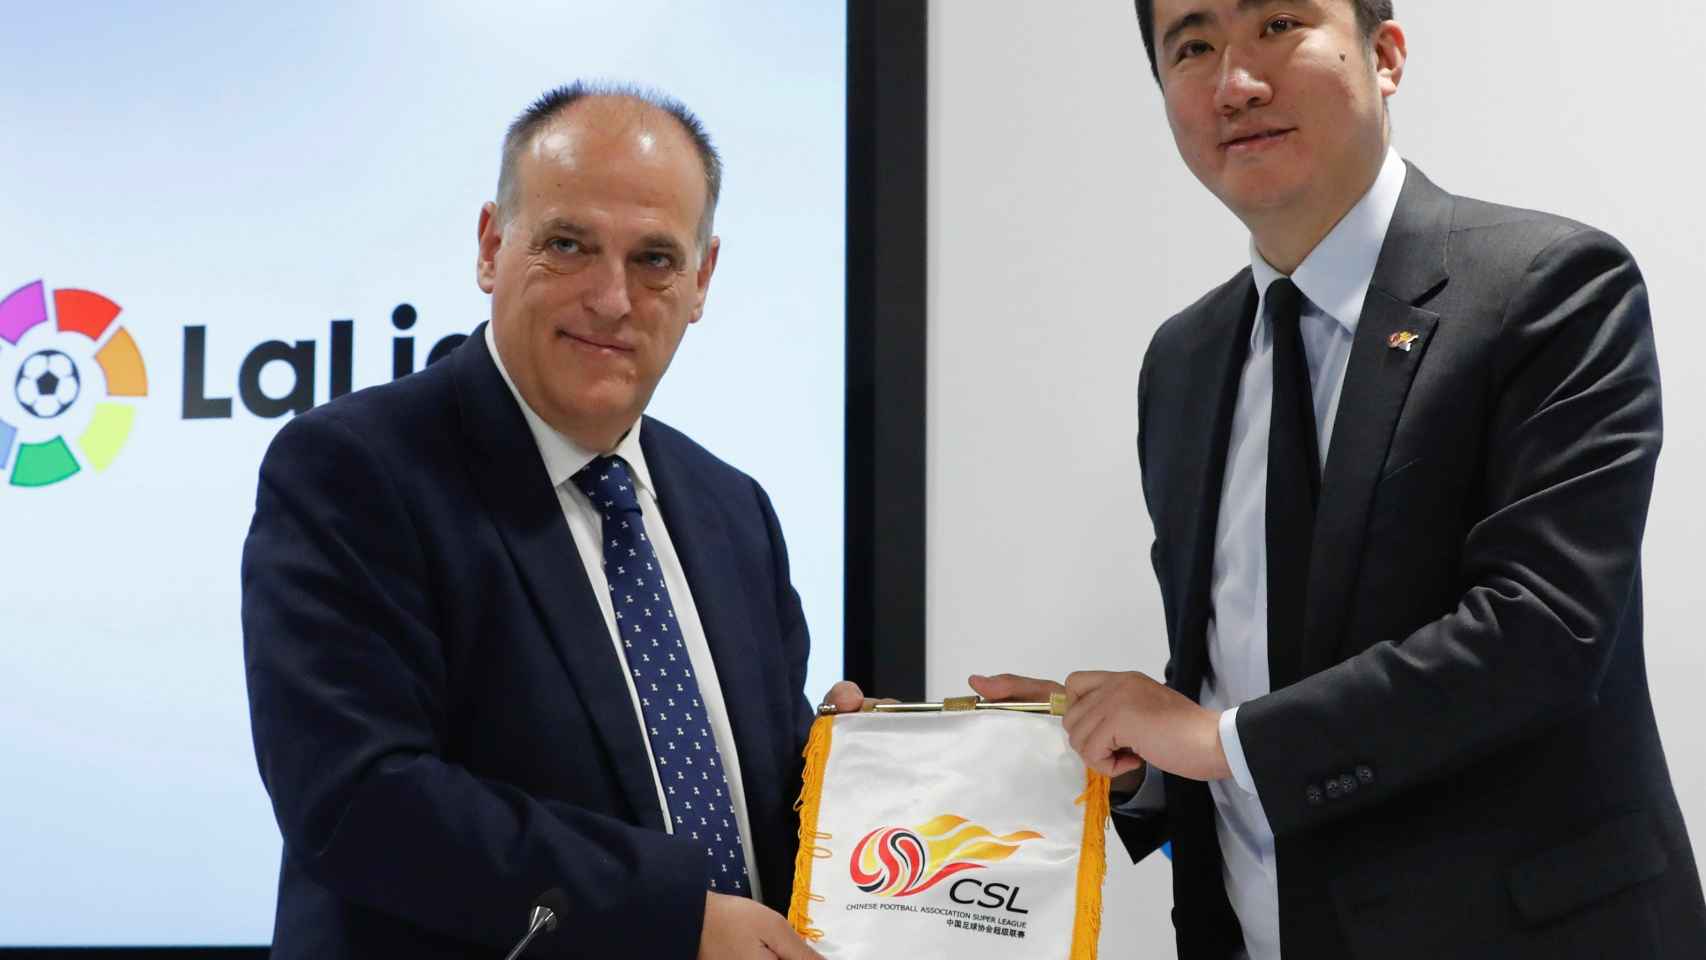 El presidente de La Liga, Javier Tebas, y Li Yuyi, presidente de la Superliga de China, durante la firma de un acuerdo de colaboración